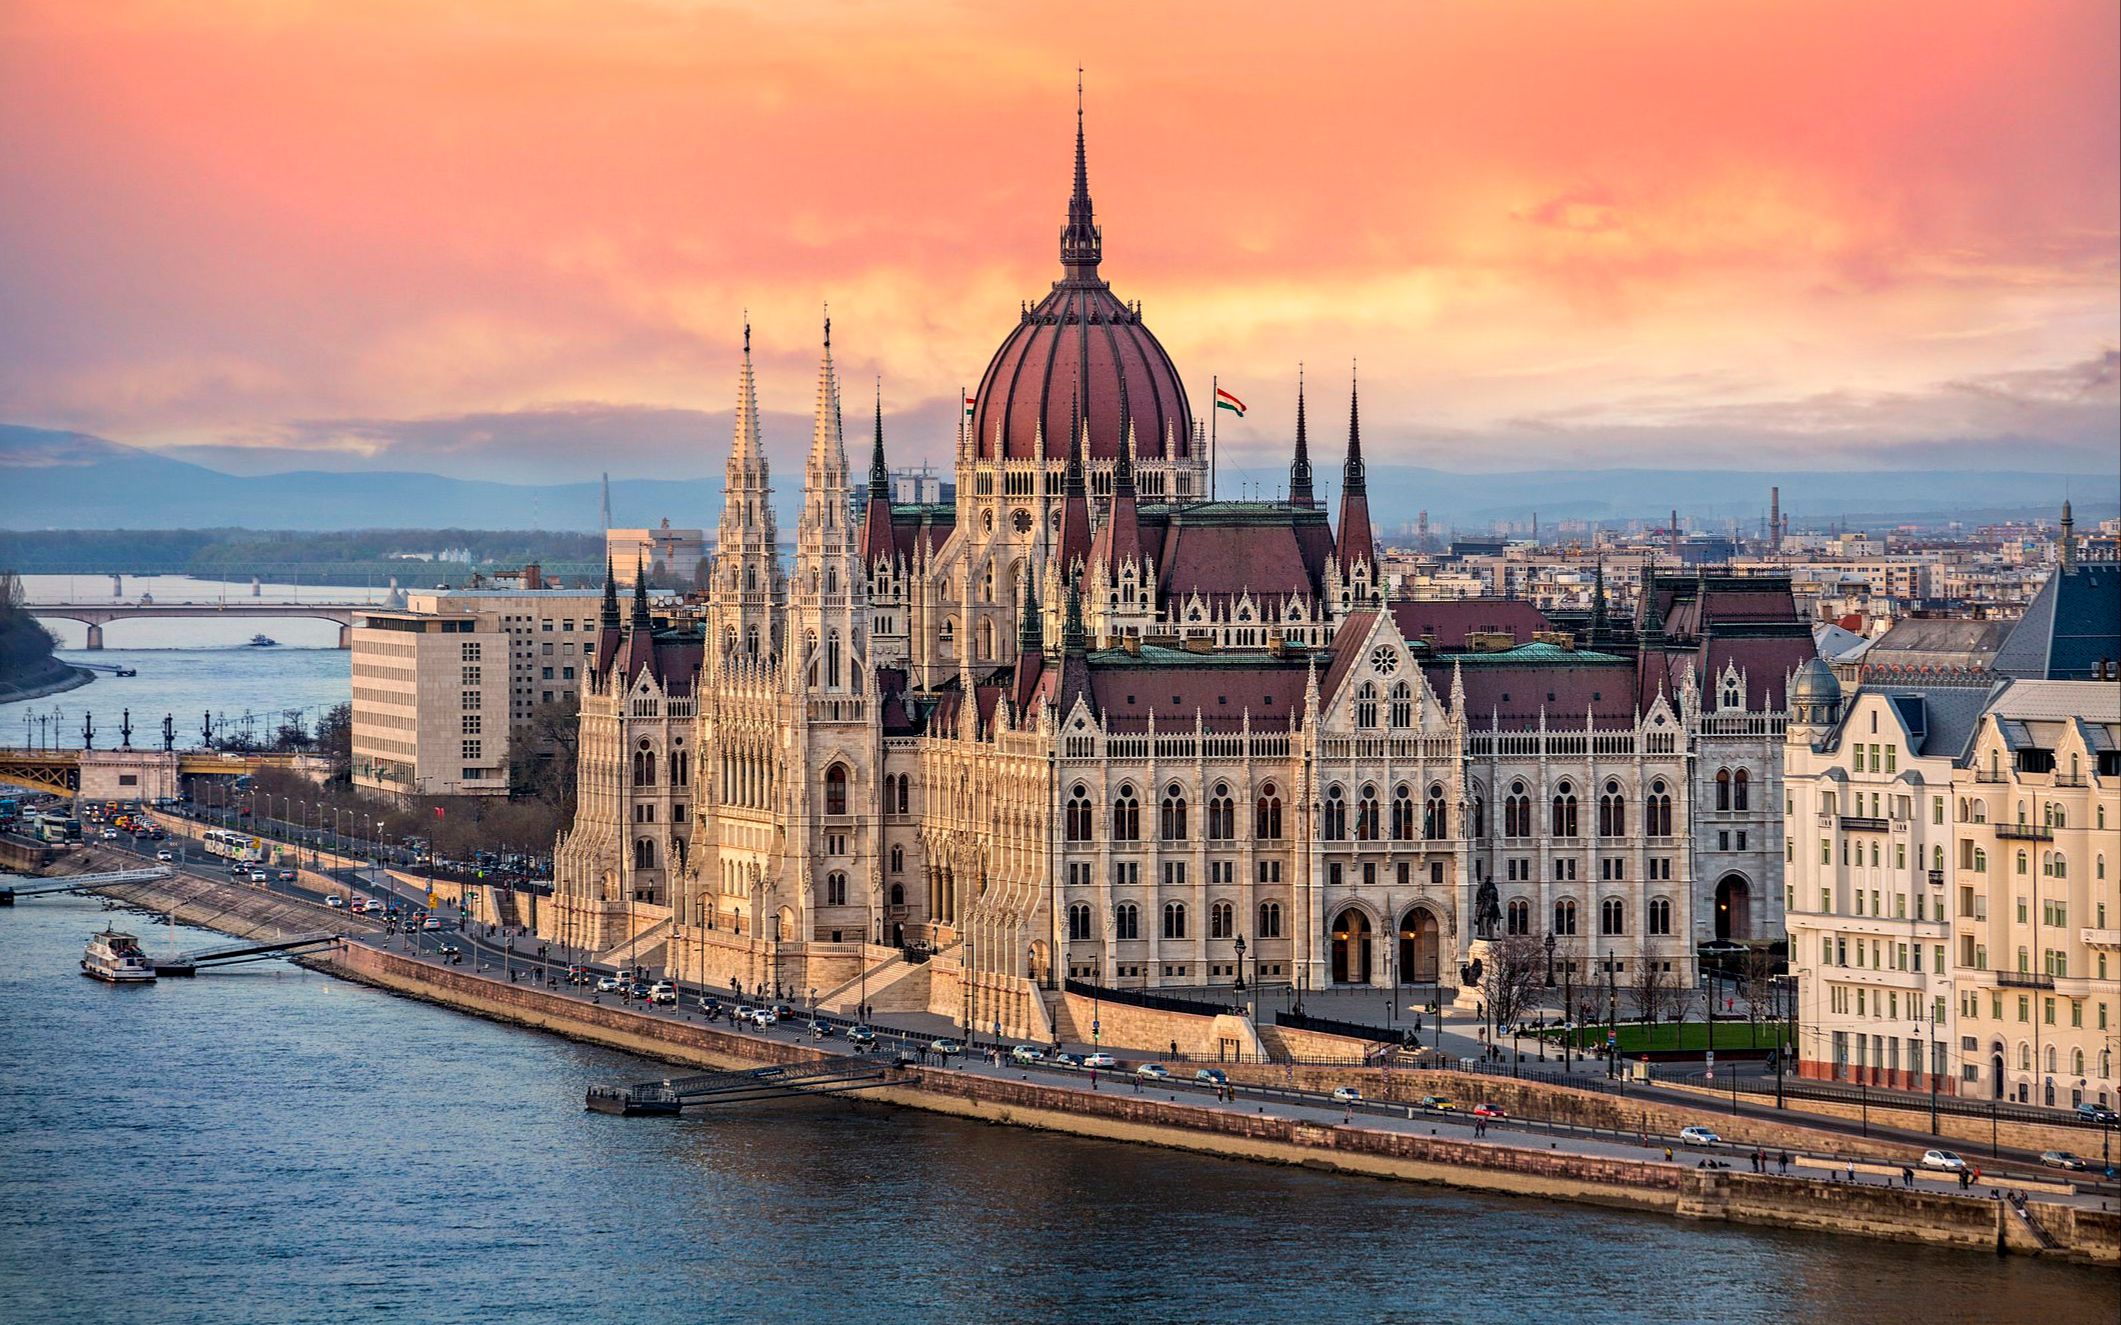 欧洲最美丽的双子城——布达佩斯（Budapest），匈牙利共和国的首都